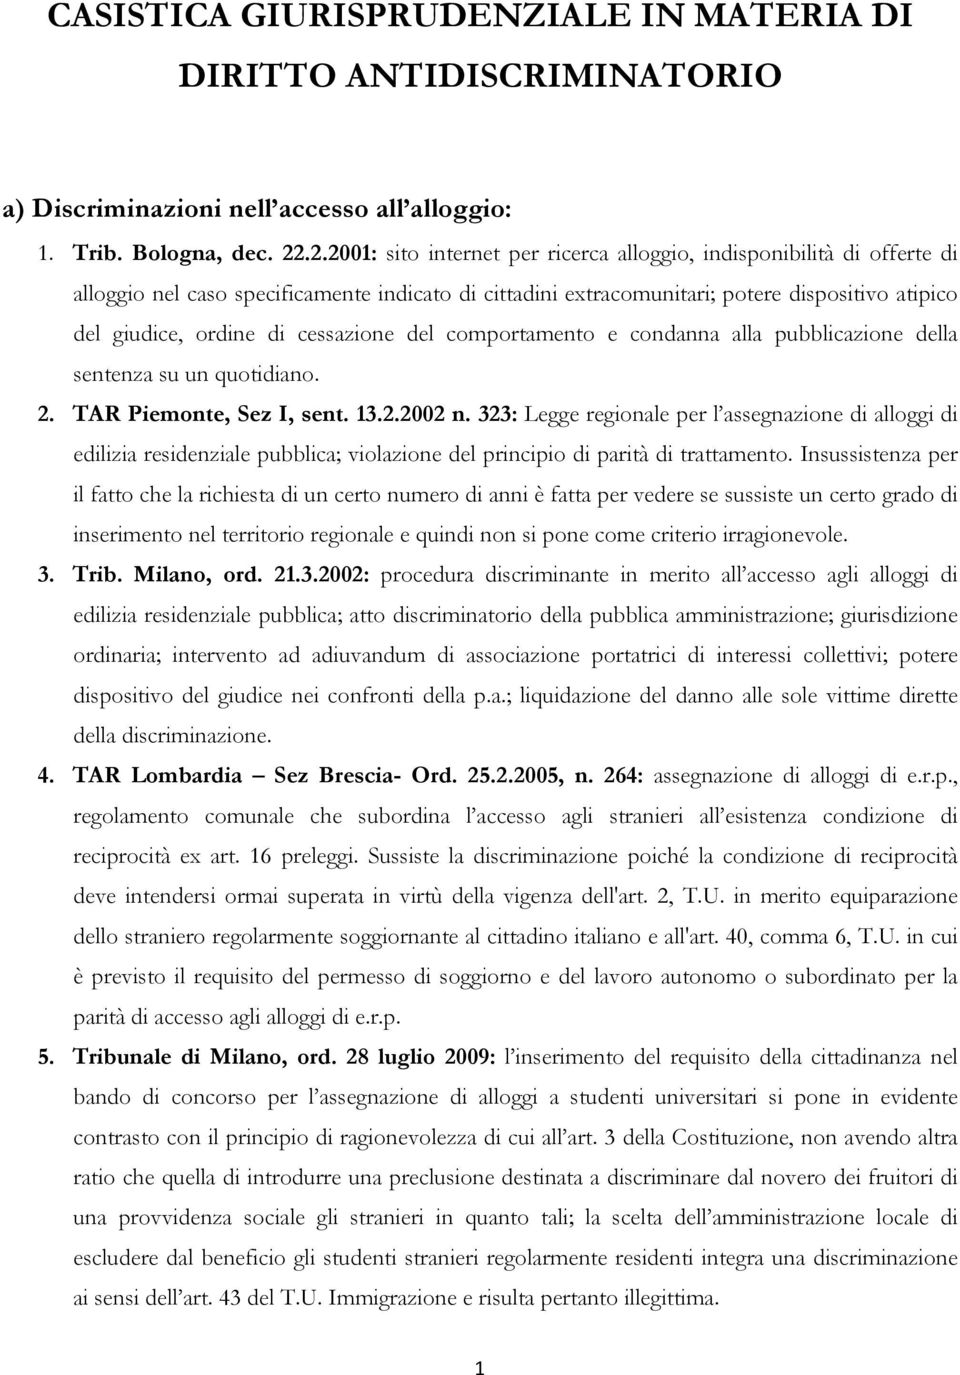 cessazione del comportamento e condanna alla pubblicazione della sentenza su un quotidiano. 2. TAR Piemonte, Sez I, sent. 13.2.2002 n.